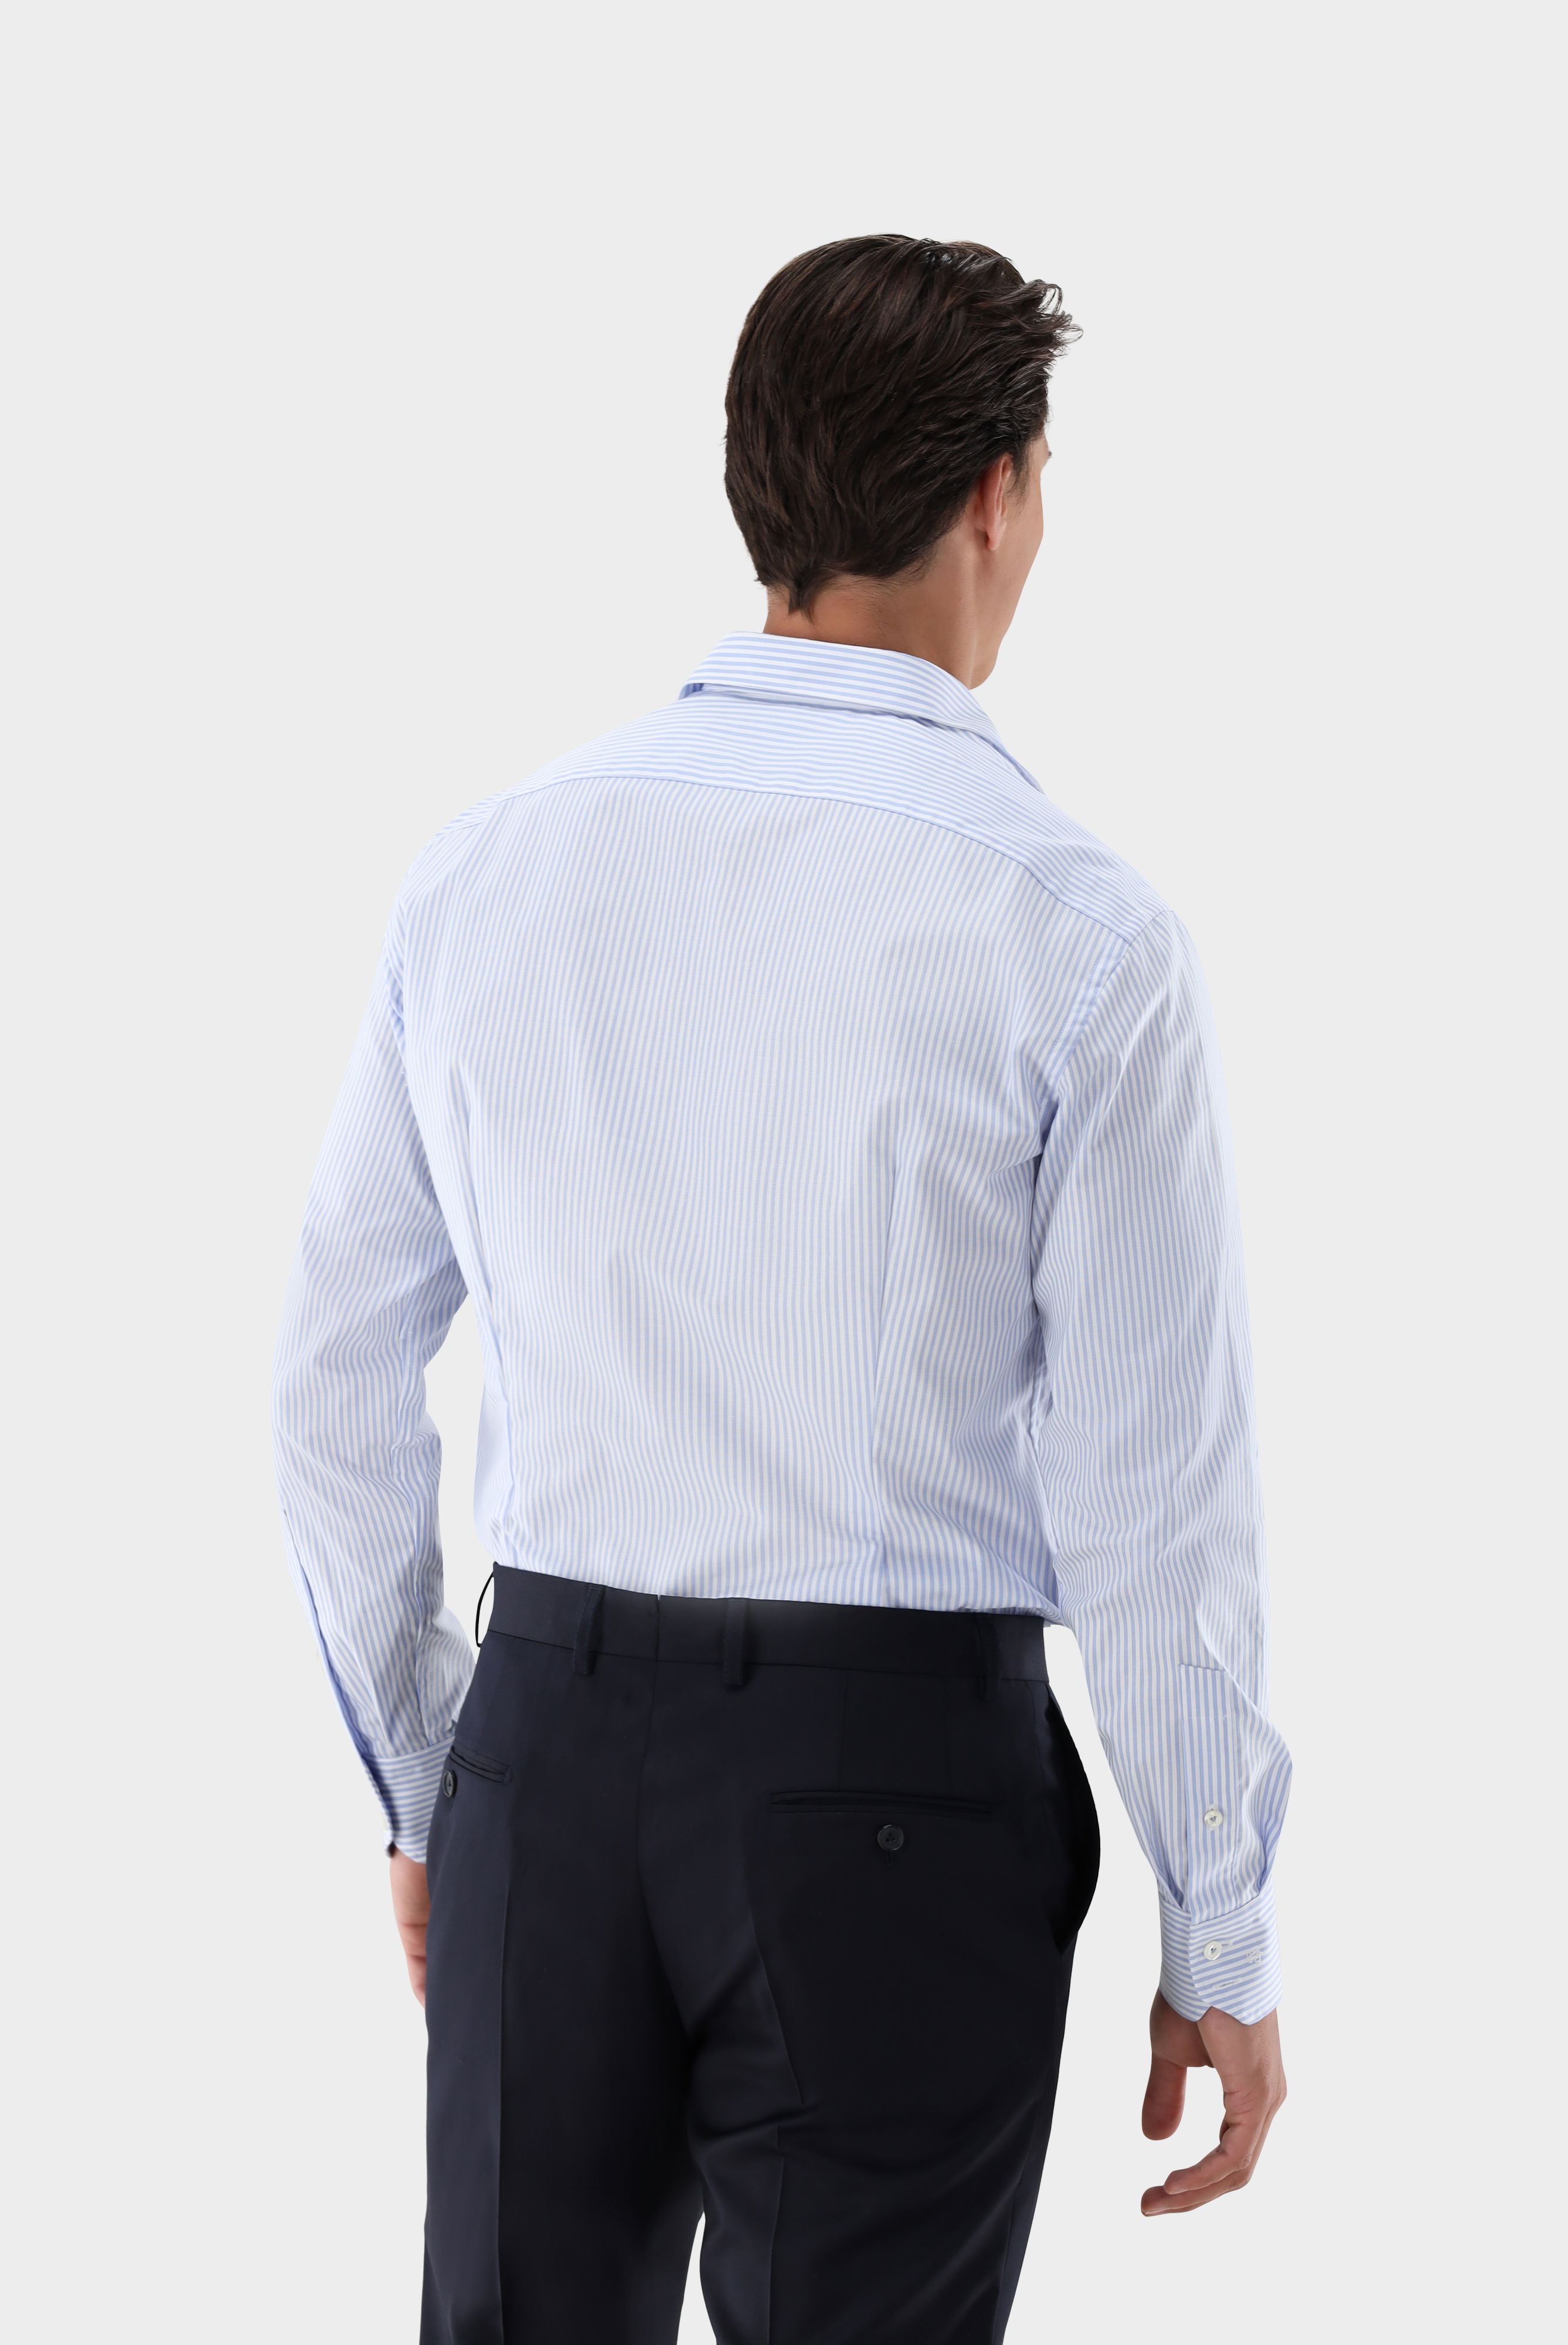 Business Hemden+Bügelfreies Hemd mit Streifen Tailor Fit+20.3281.NV.166020.730.37